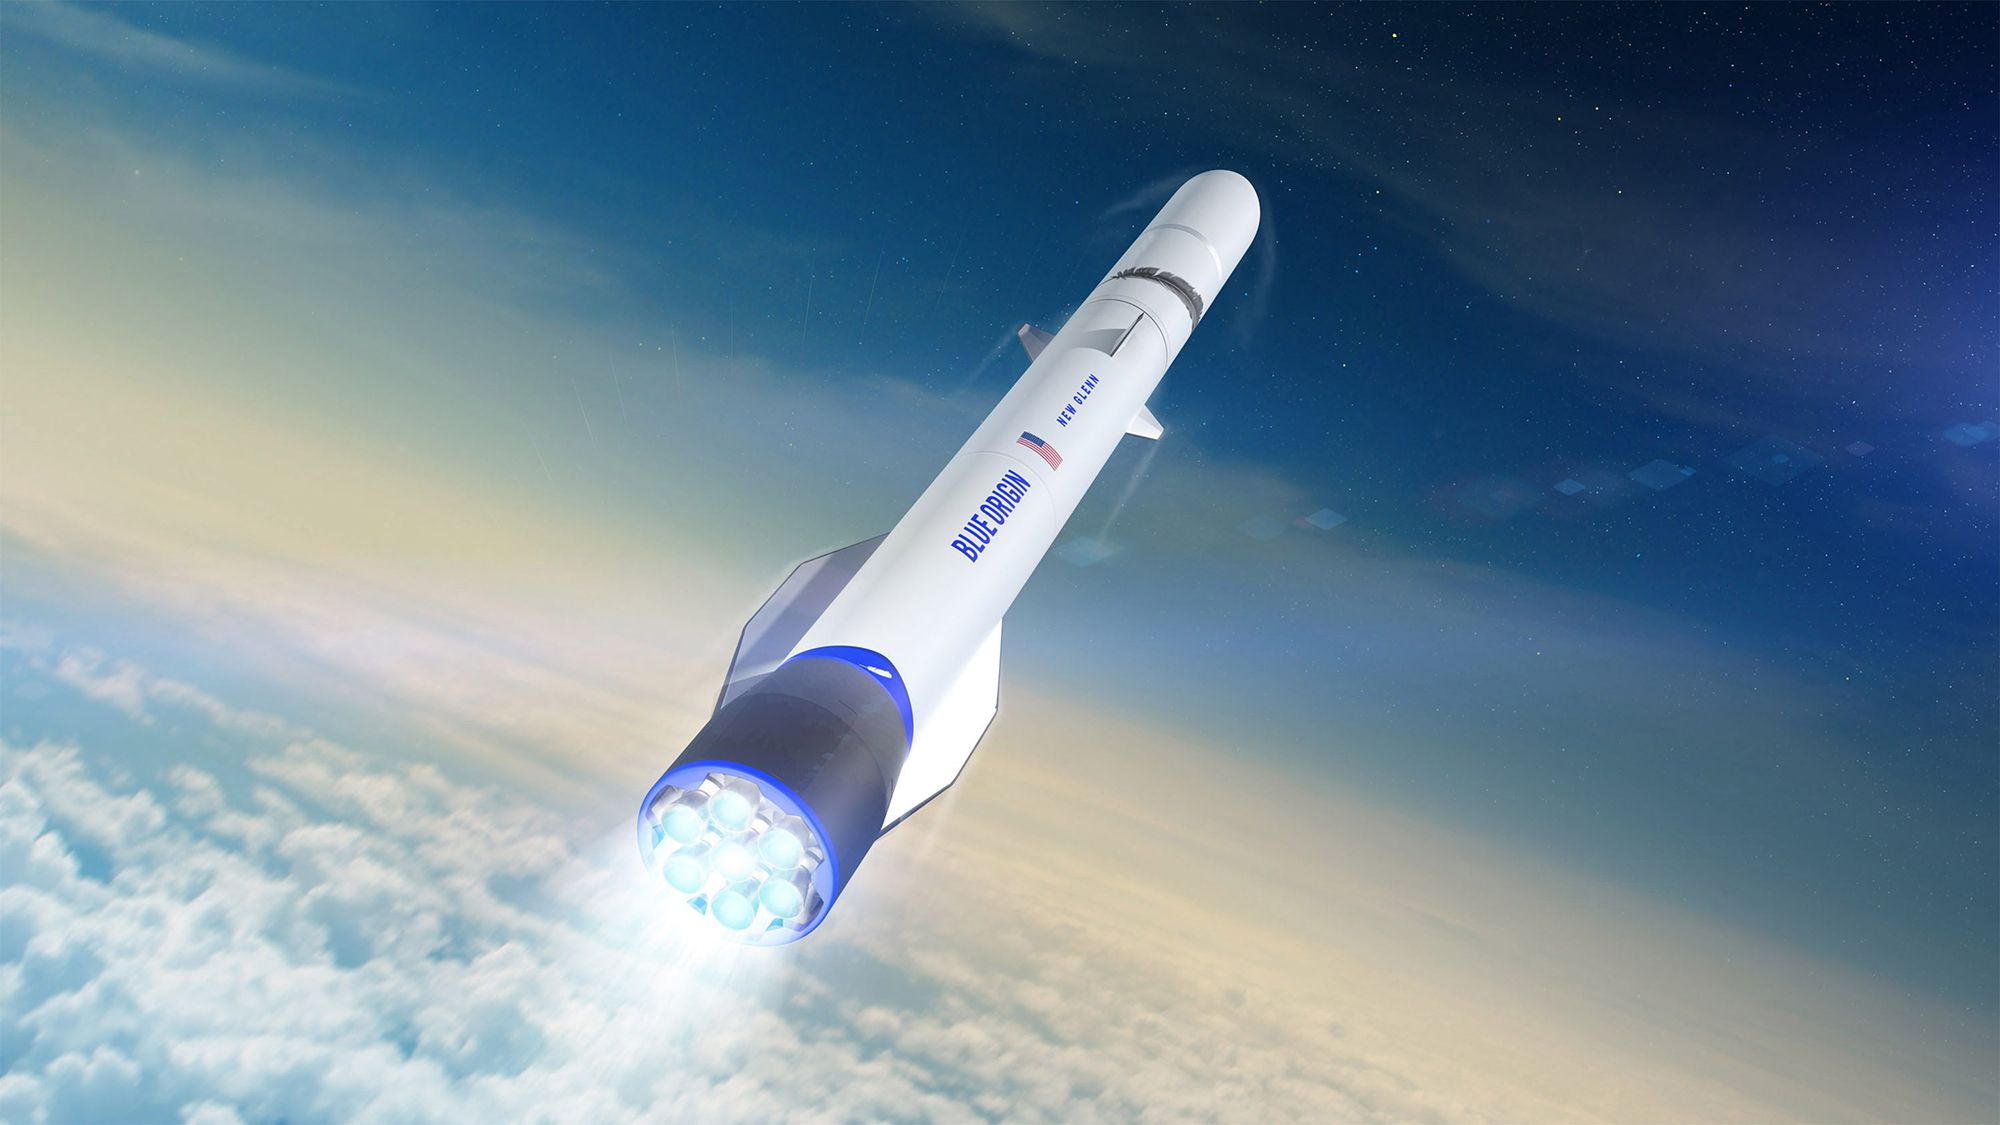 Bỏ tiền tấn vào cuộc đua hàng không vũ trụ, tại sao Blue Origin của tỷ phú Jeff Bezos lại đại bại trước Elon Musk? - Ảnh 1.